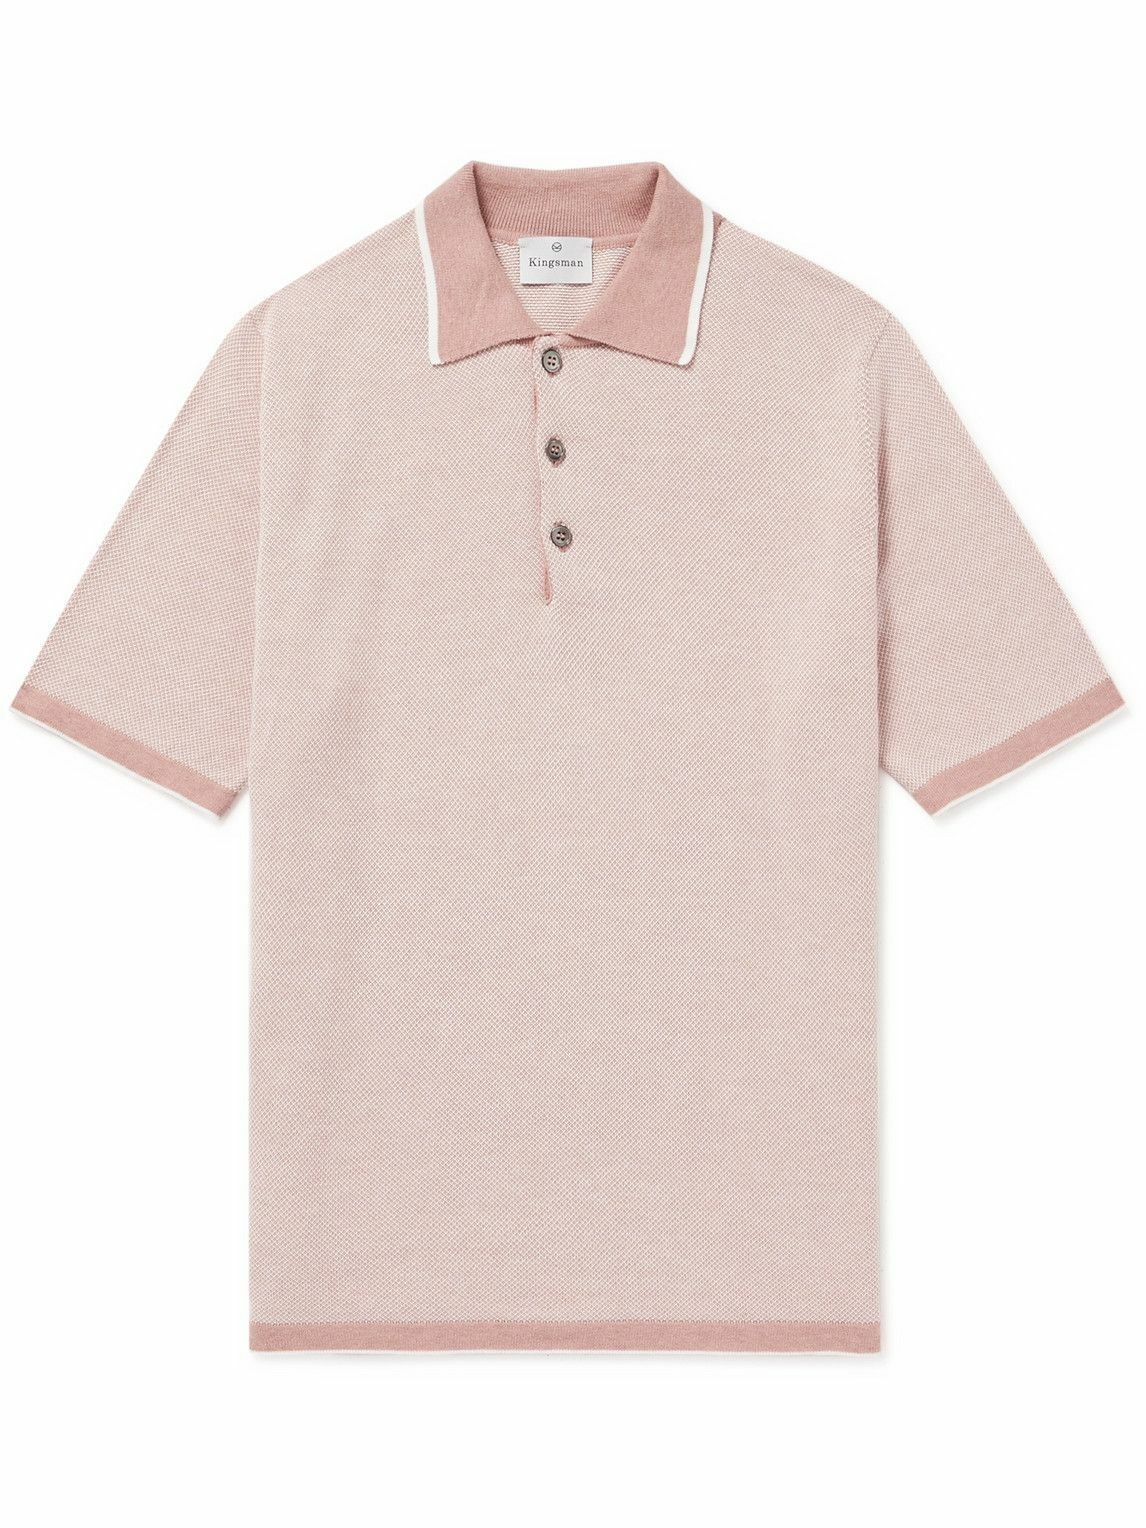 Kingsman - Cotton-Piqué Polo Shirt - Pink Kingsman